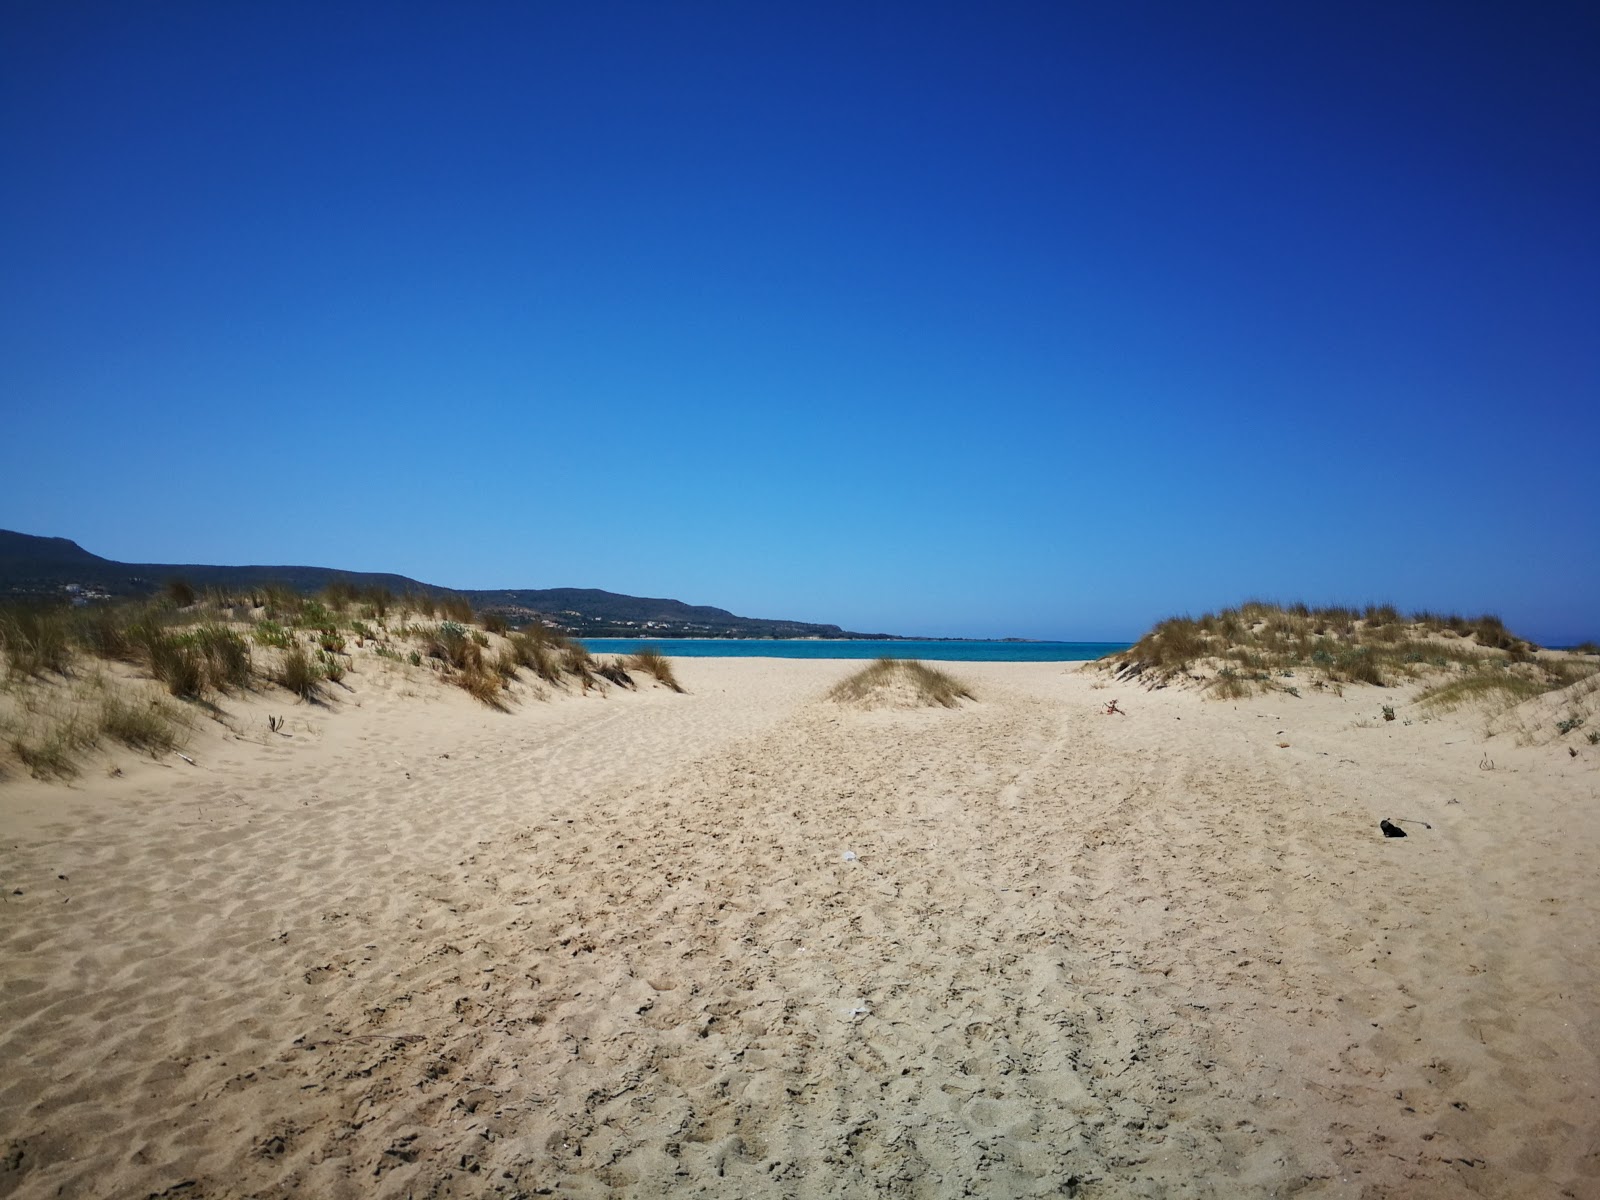 Fotografie cu Pouda beach - locul popular printre cunoscătorii de relaxare